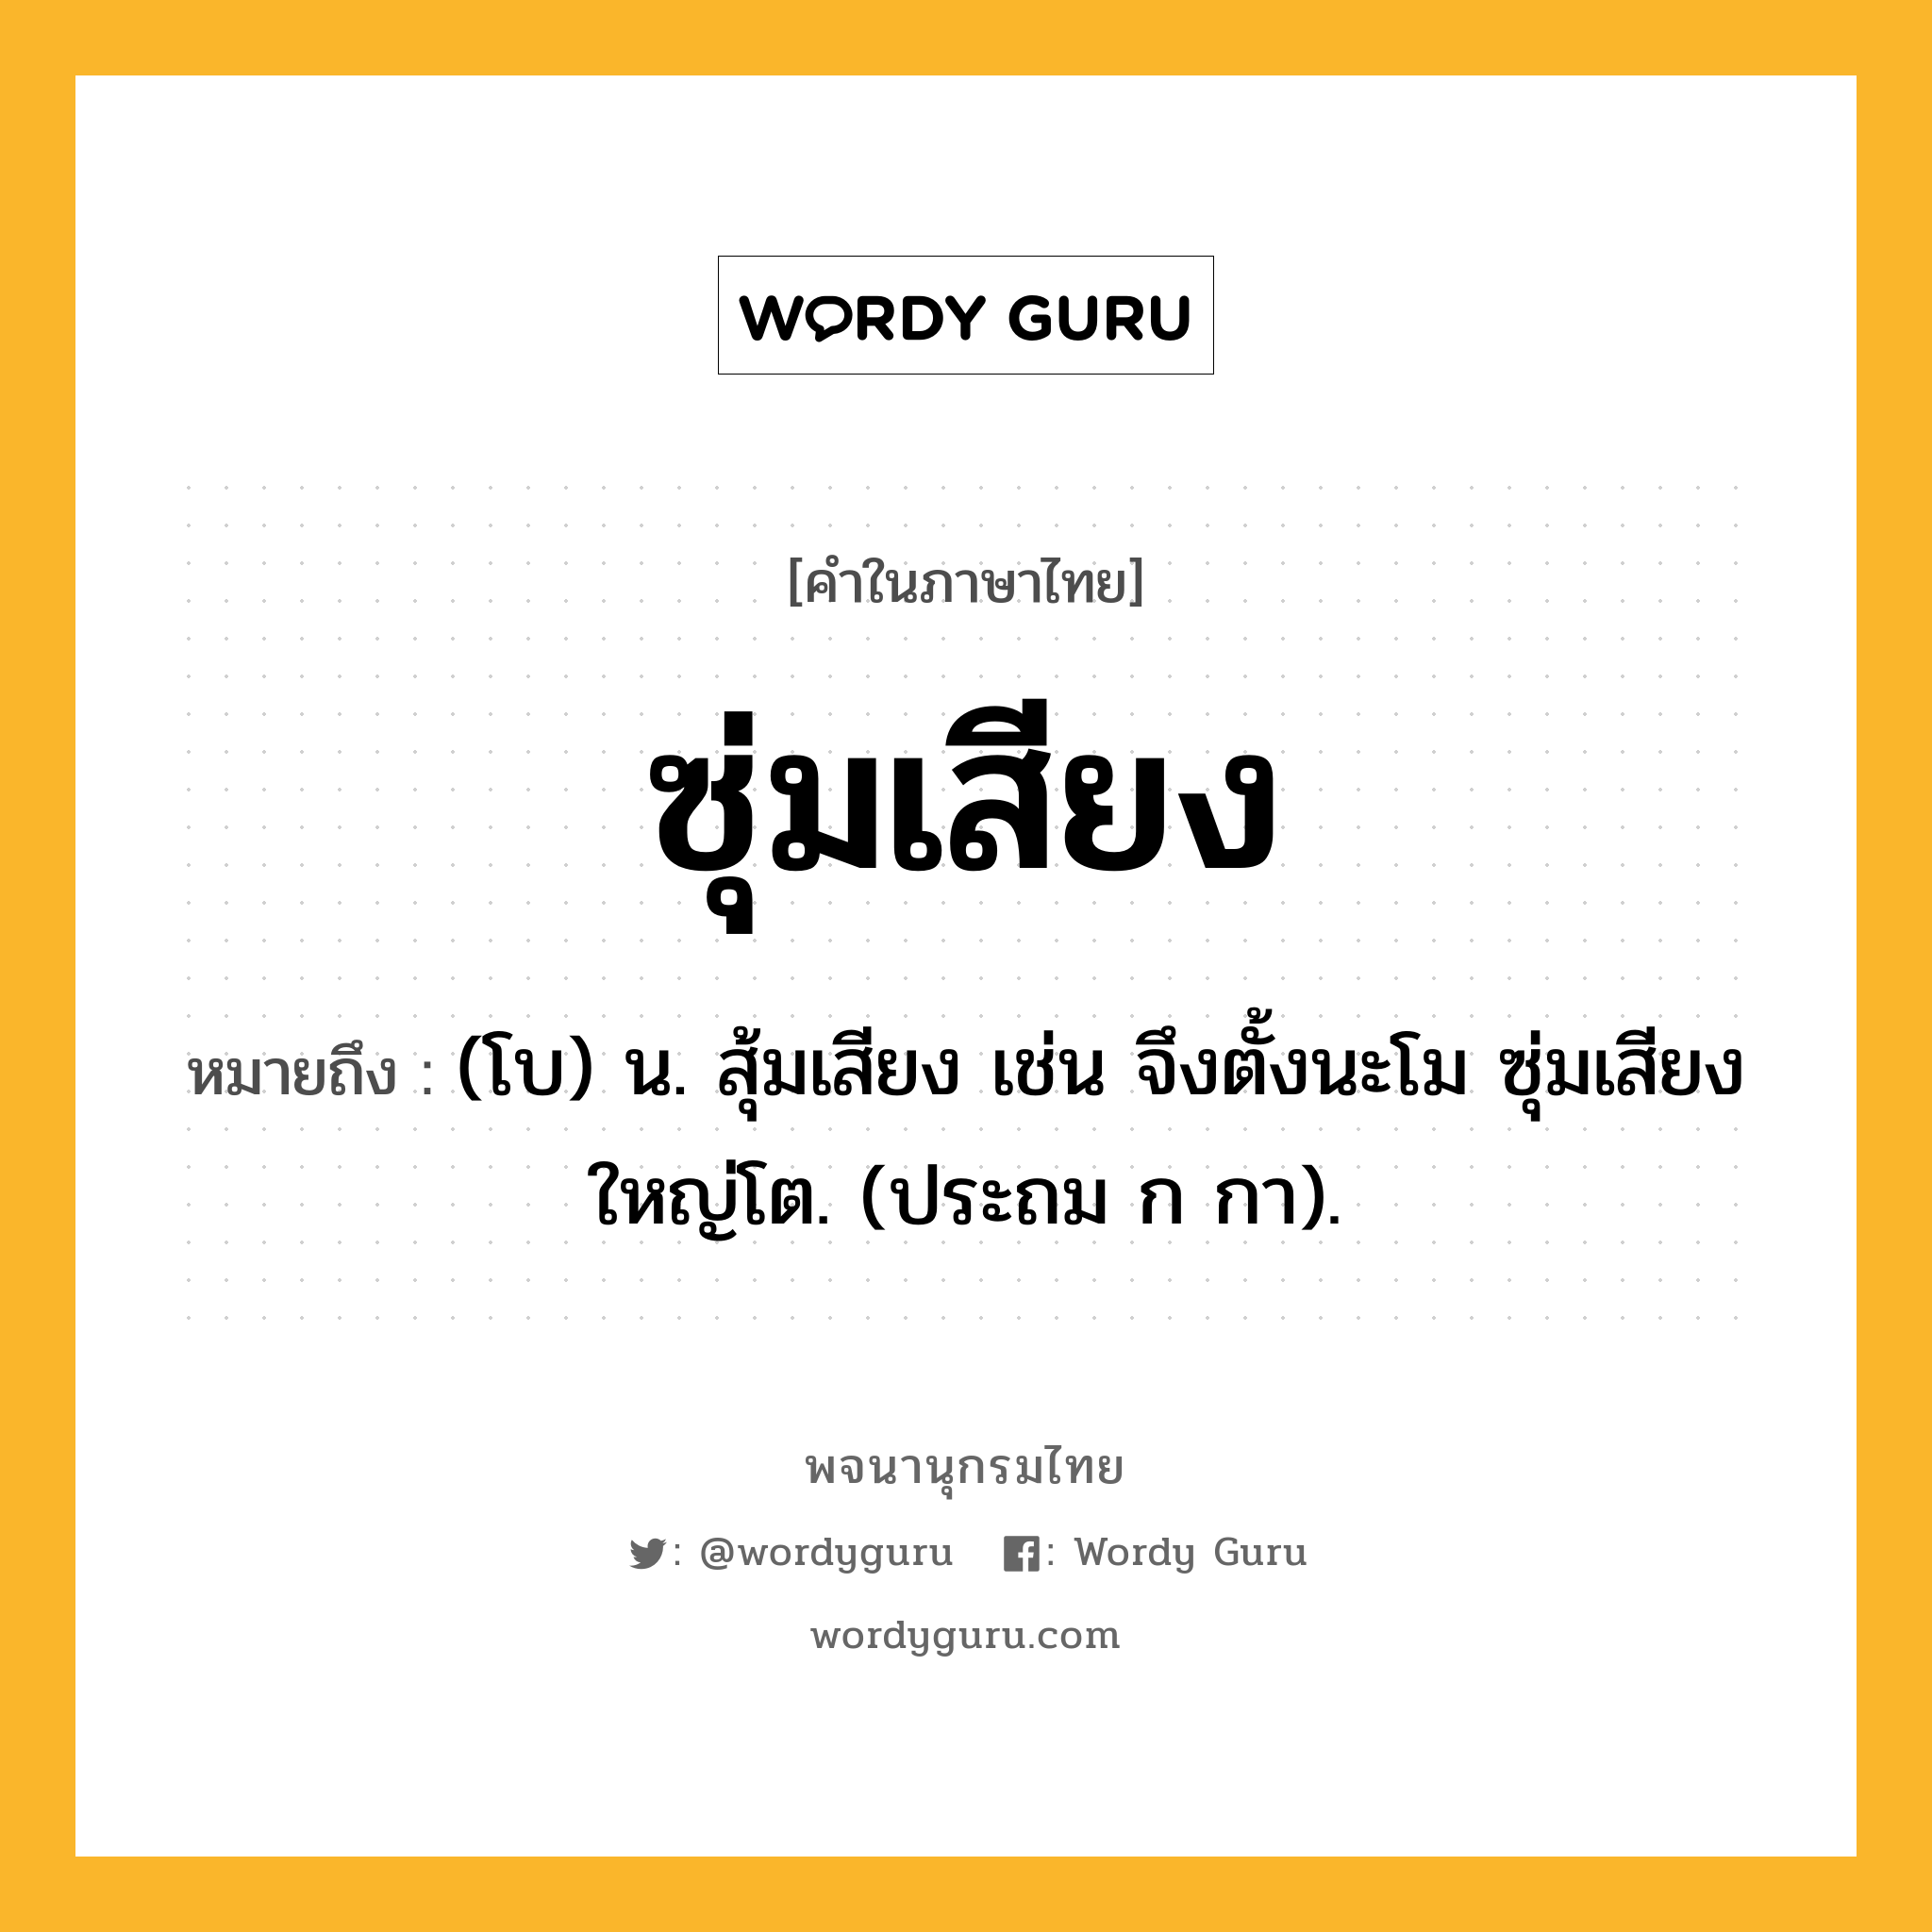 ซุ่มเสียง ความหมาย หมายถึงอะไร?, คำในภาษาไทย ซุ่มเสียง หมายถึง (โบ) น. สุ้มเสียง เช่น จึงตั้งนะโม ซุ่มเสียงใหญ่โต. (ประถม ก กา).